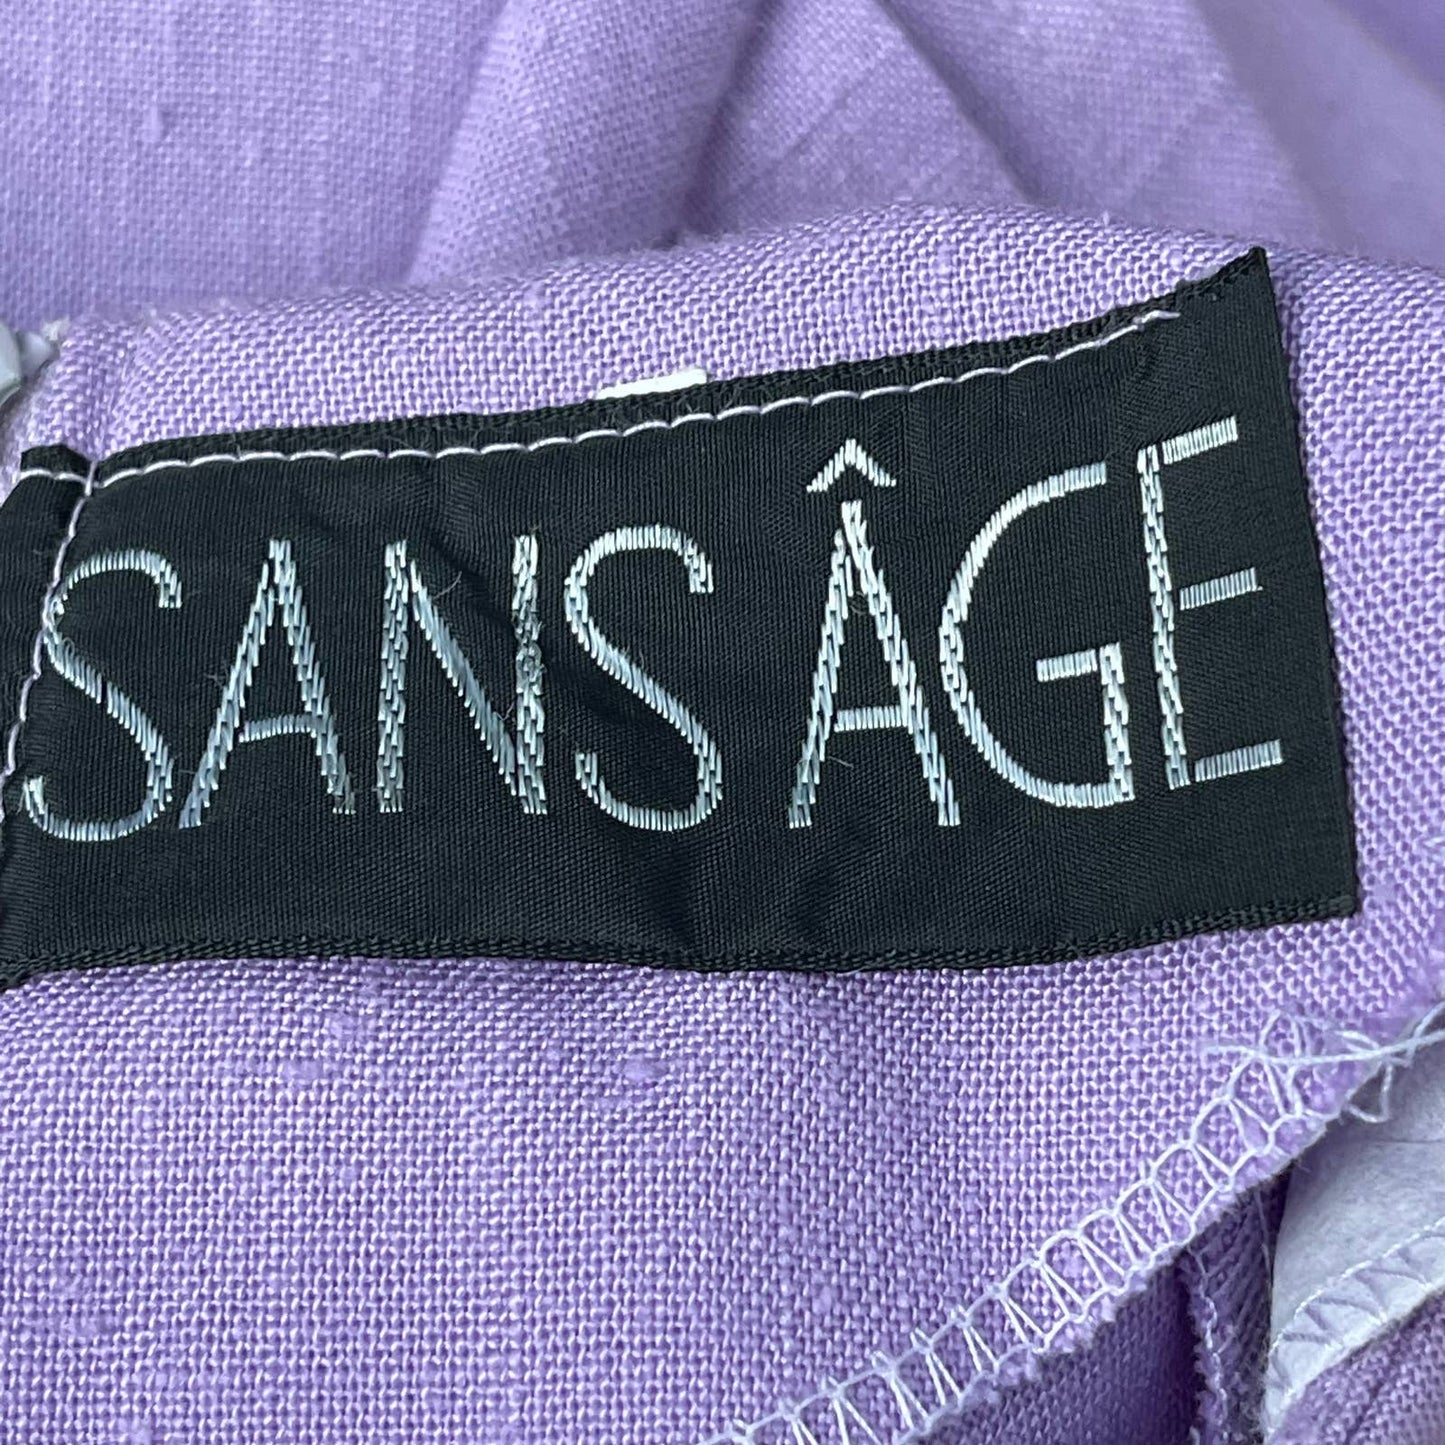 Vintage 80s Linen Sheath Midi Dress Purple Cotton Short Sleeve Sans Age Size M L